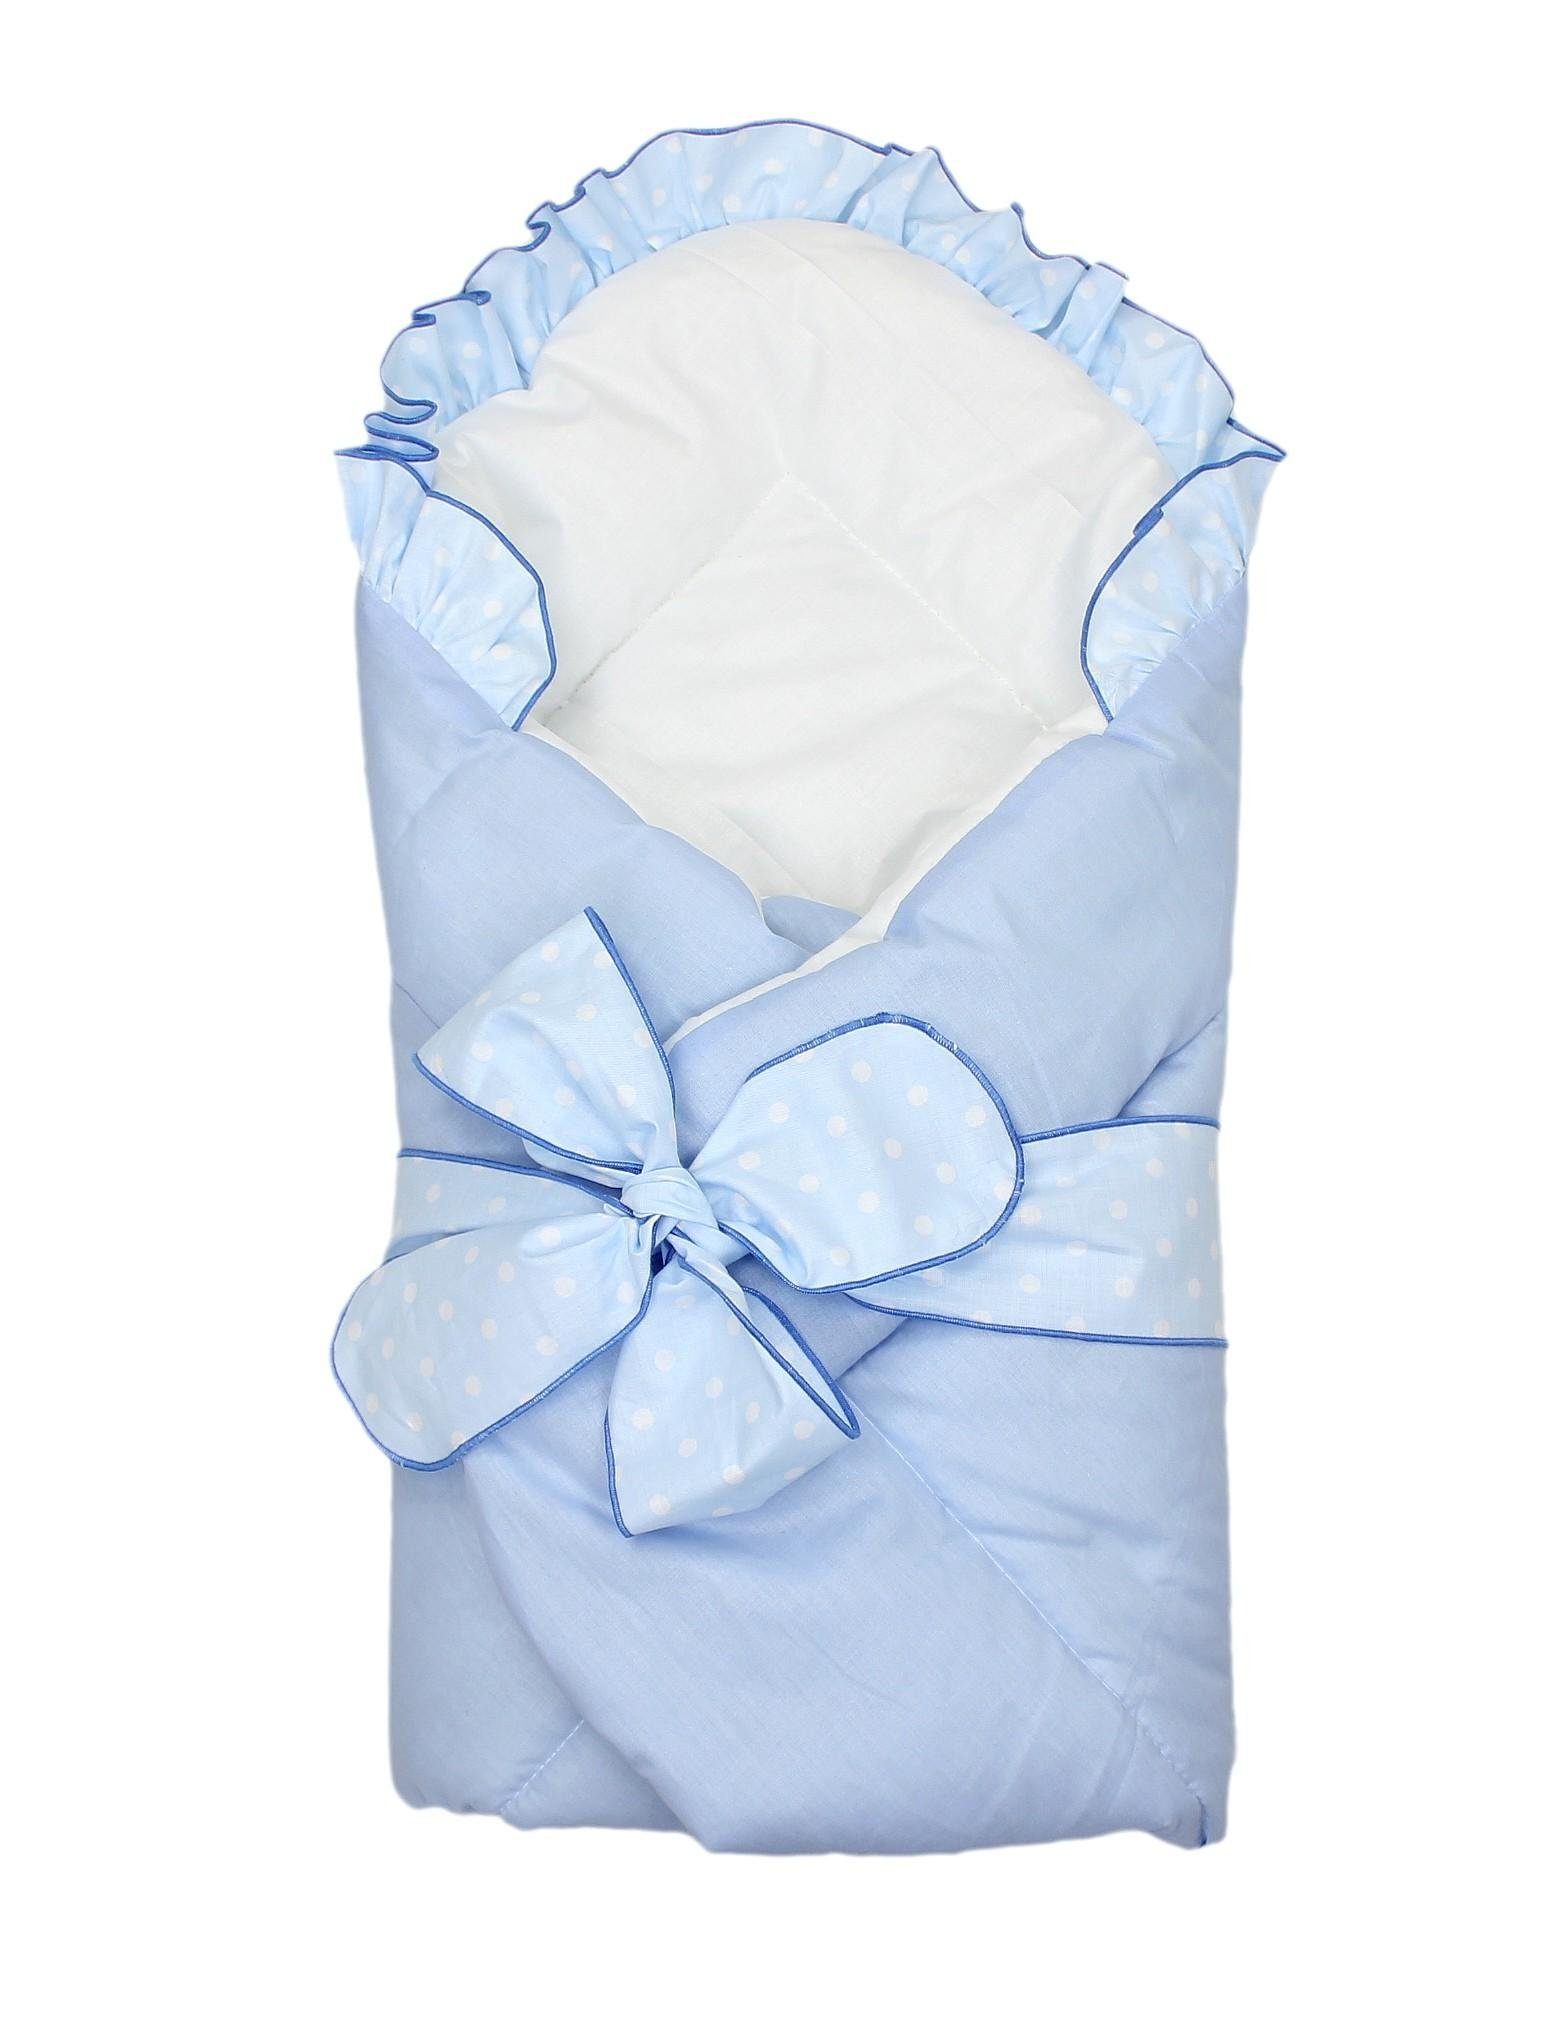 Blau Einschlagdecke Schleife, TupTam TupTam Unisex Einschlagdecke Baby mit